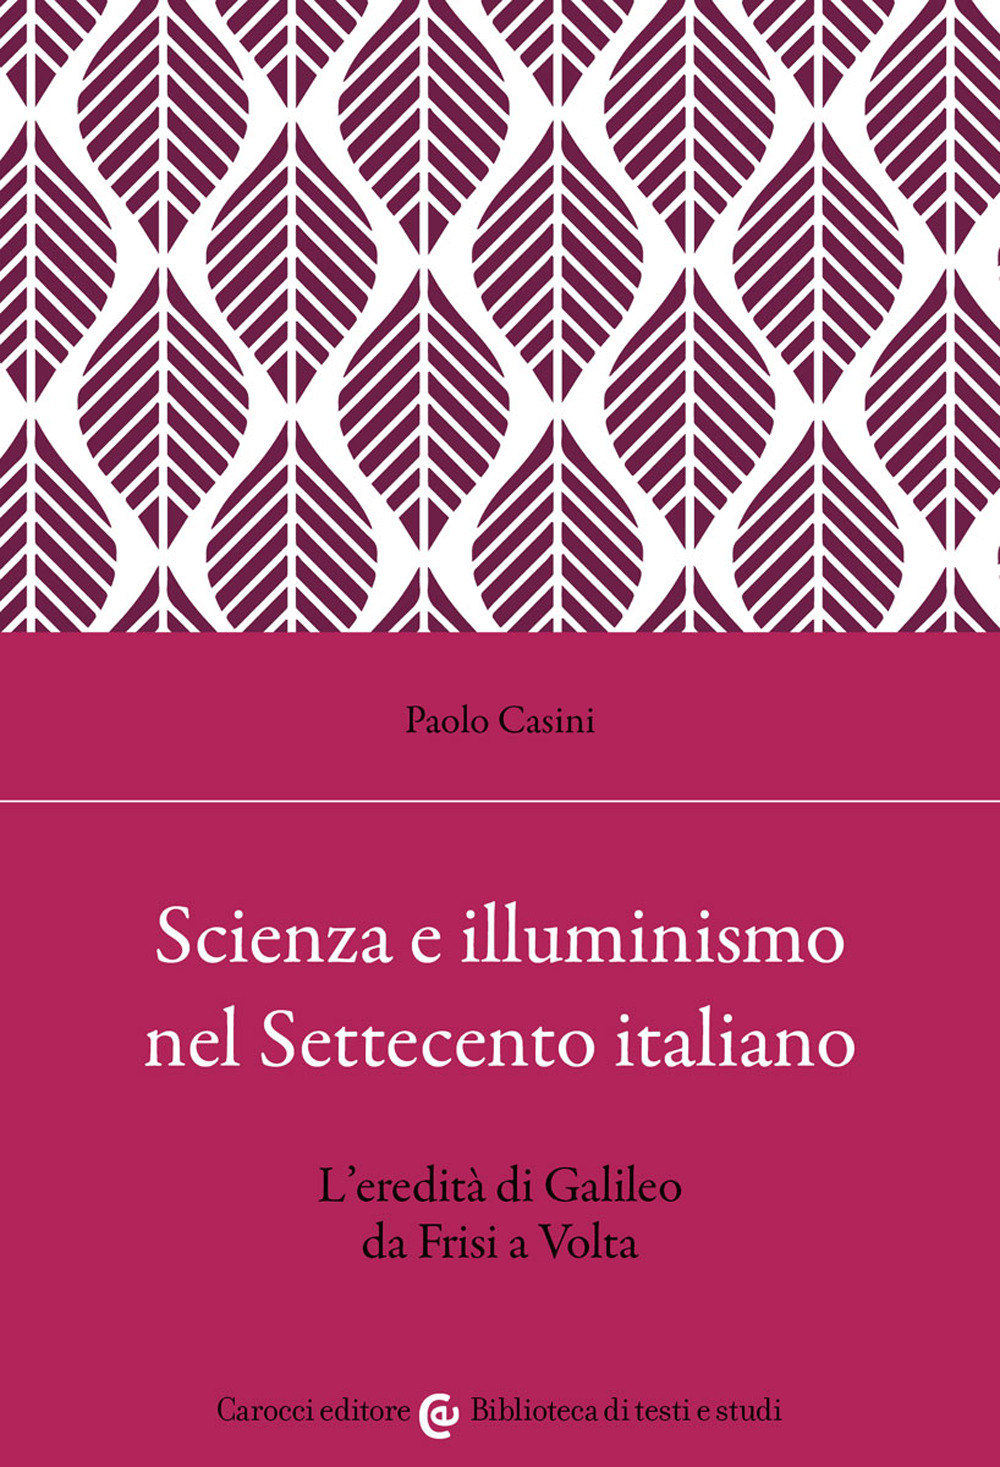 Image of Scienza e illuminismo nel Settecento italiano L'eredità di Galileo da Frisi a Volta